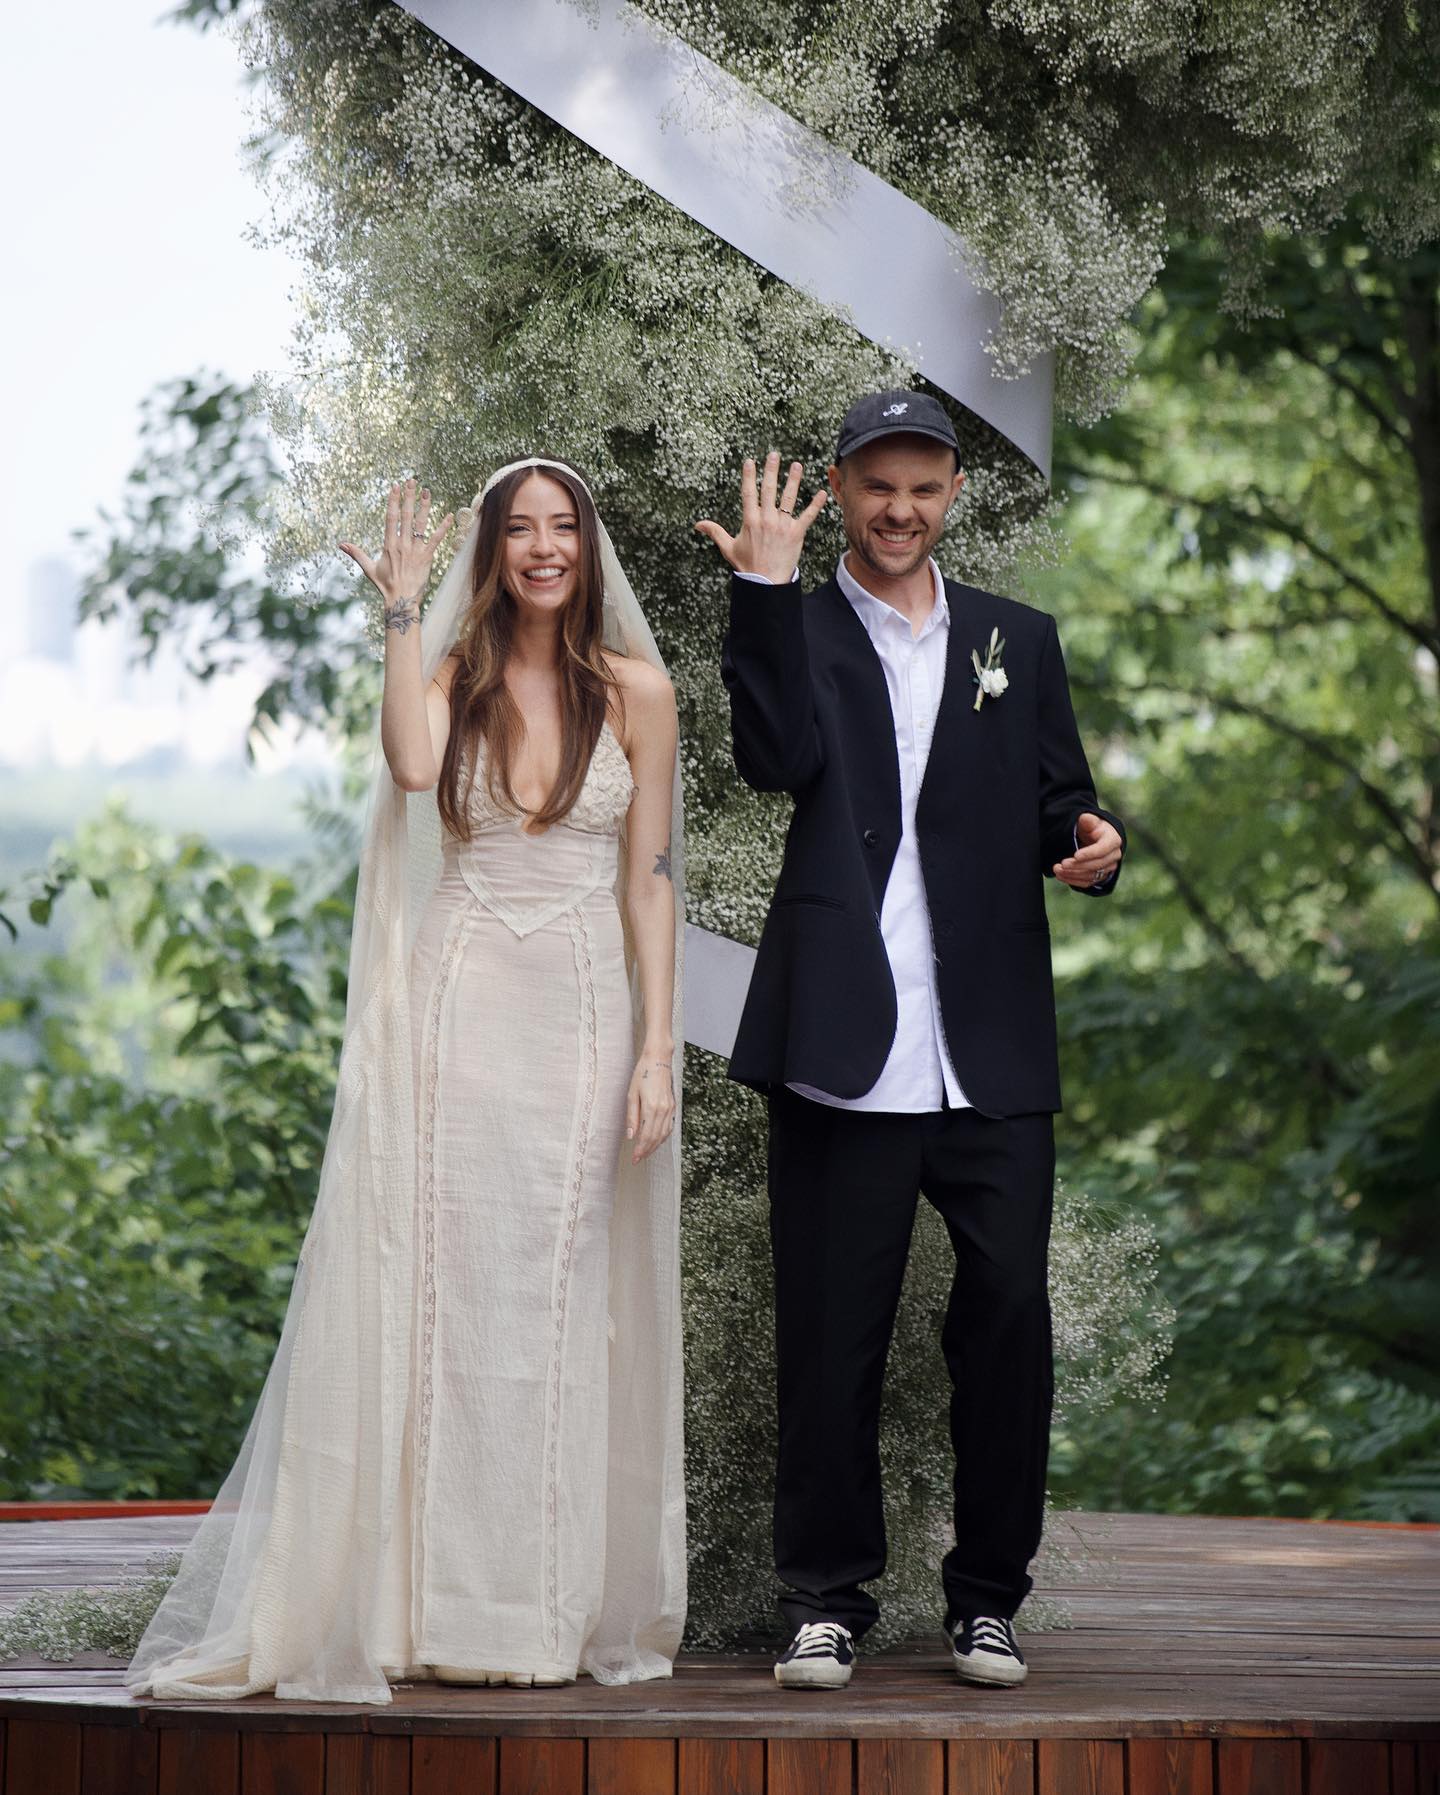 Надя Дорофеева вышла замуж в свадебном платье от украинского бренда и вязаной фате